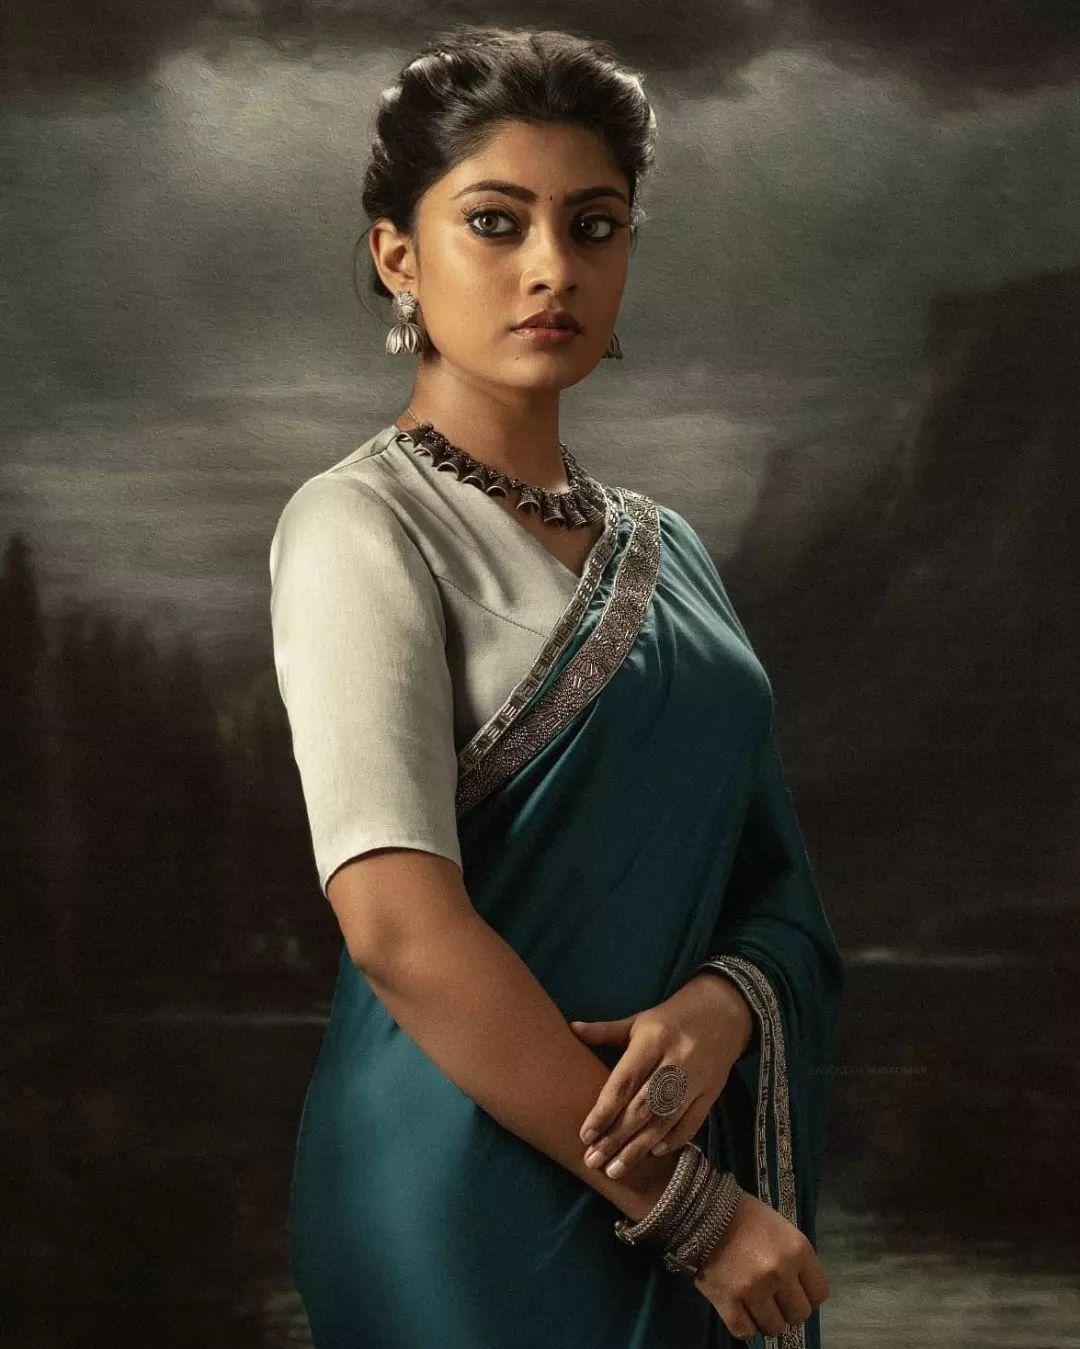 Tamil Actress Ammu Abhirami Beautiful And Glamours Photos In Saree Latest Hot And Sexy